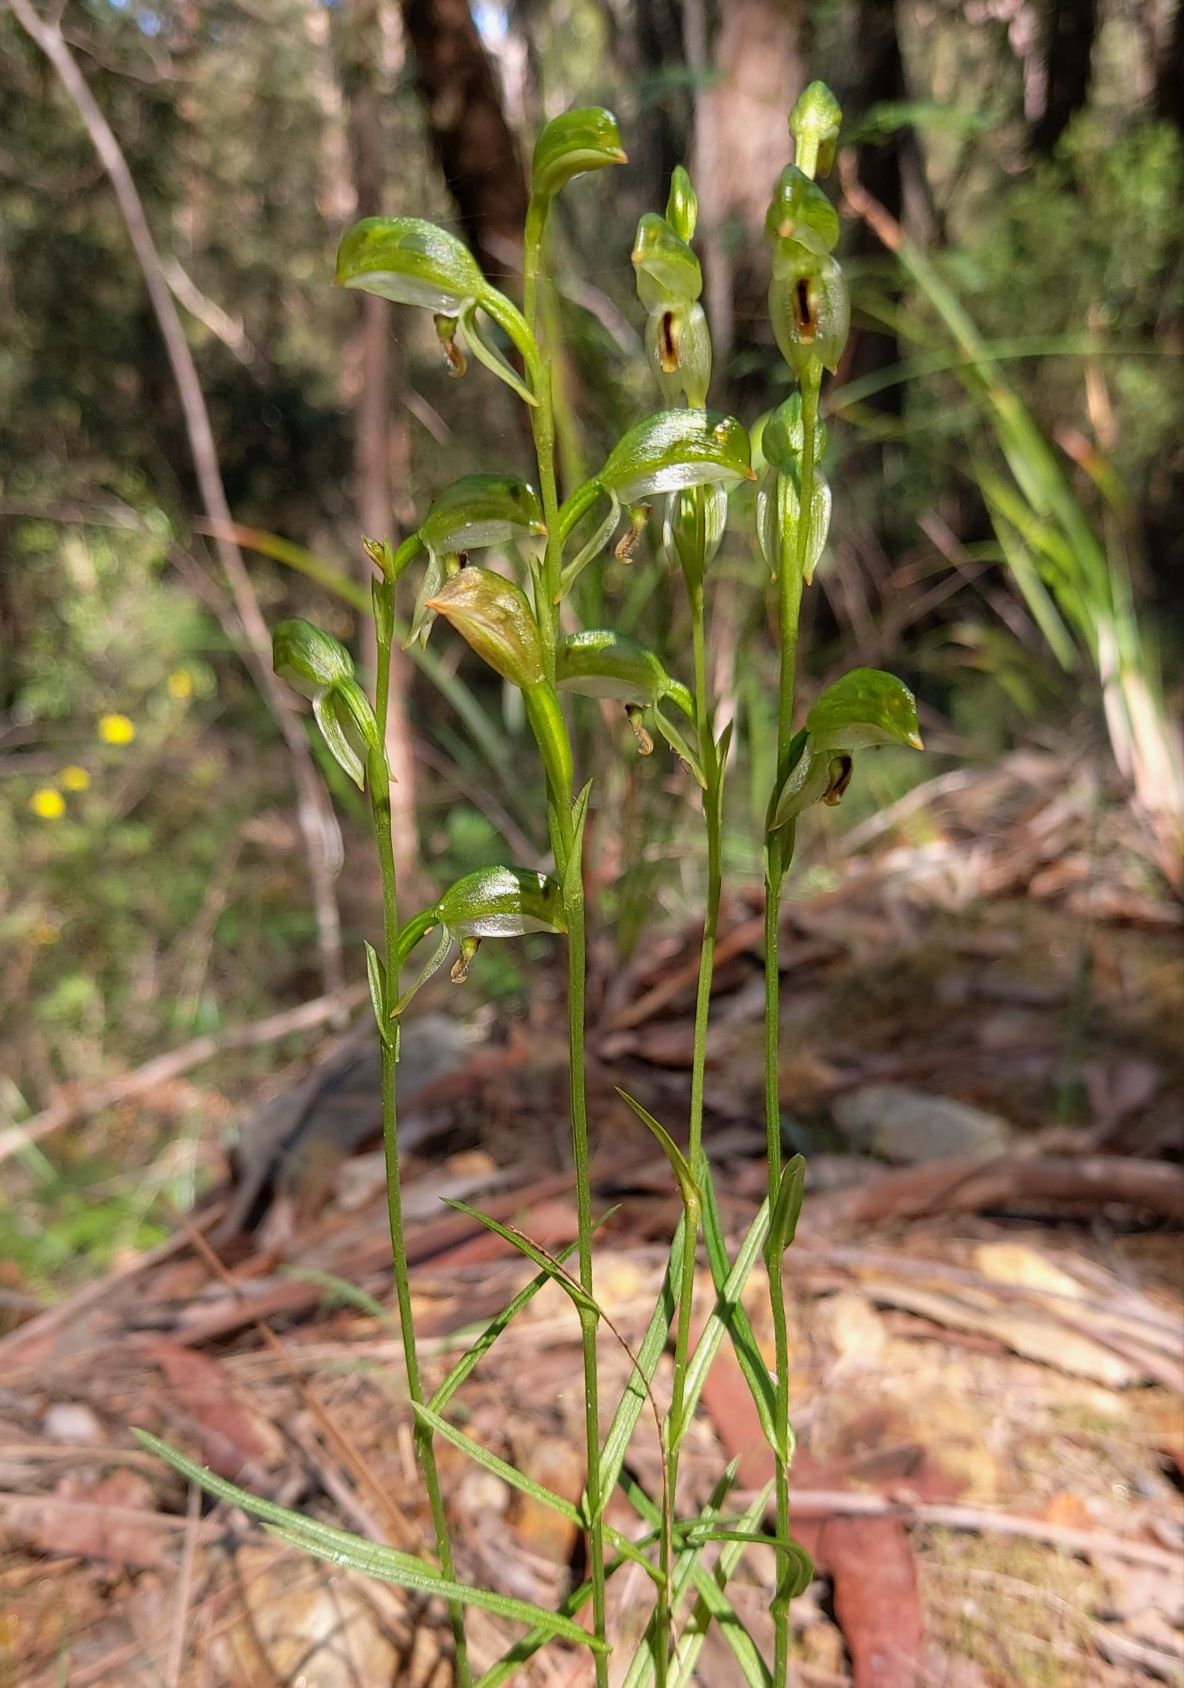 Pterosylis longifolia showing narrow lanceolate leaves